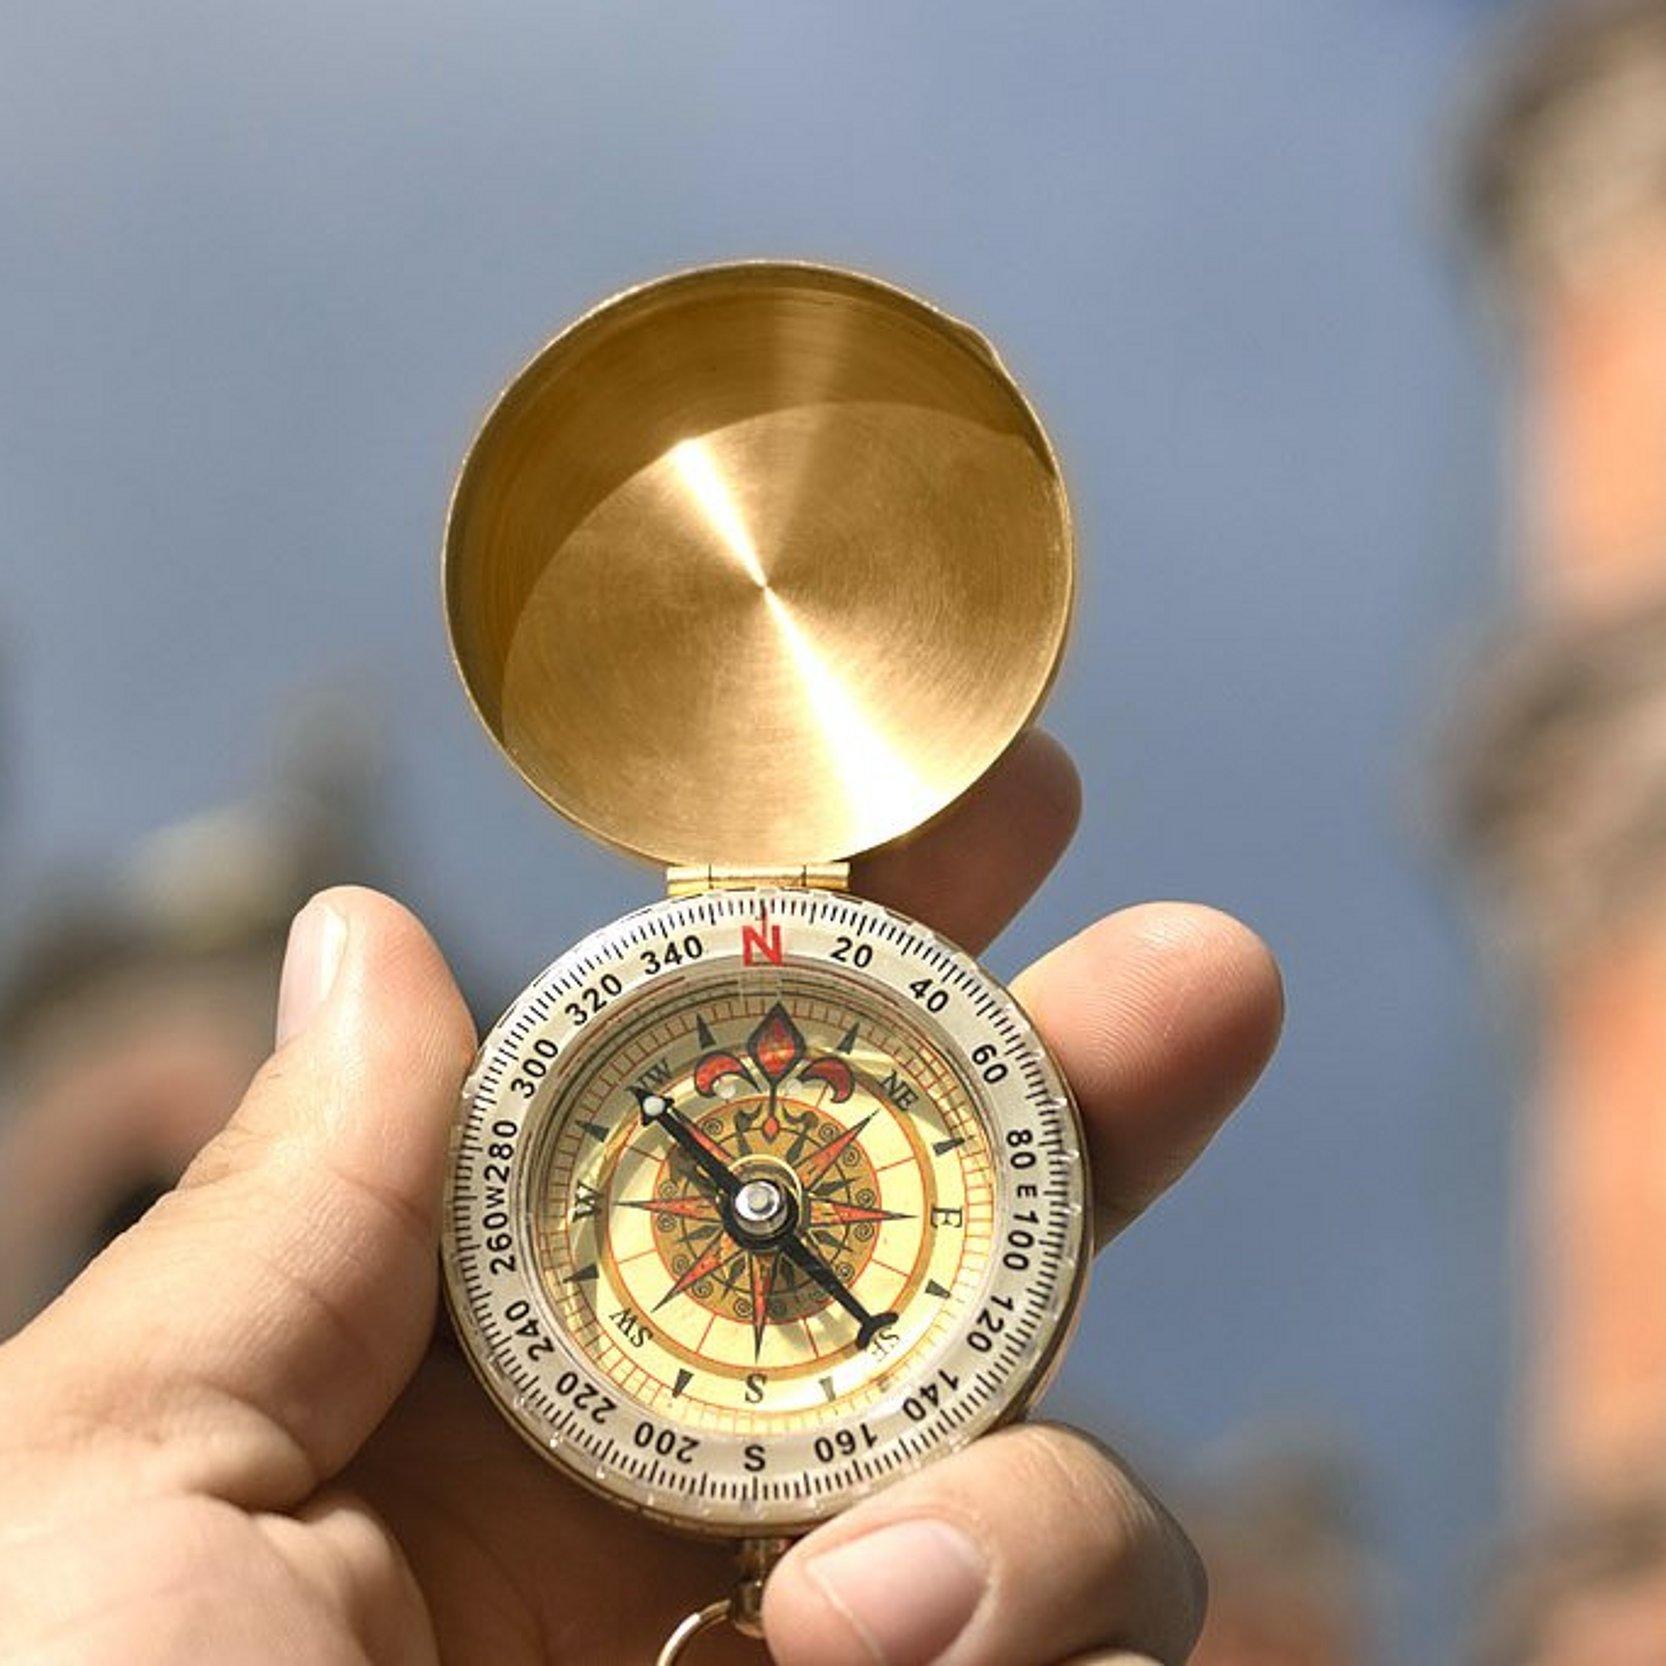 Kompass vor Kirche